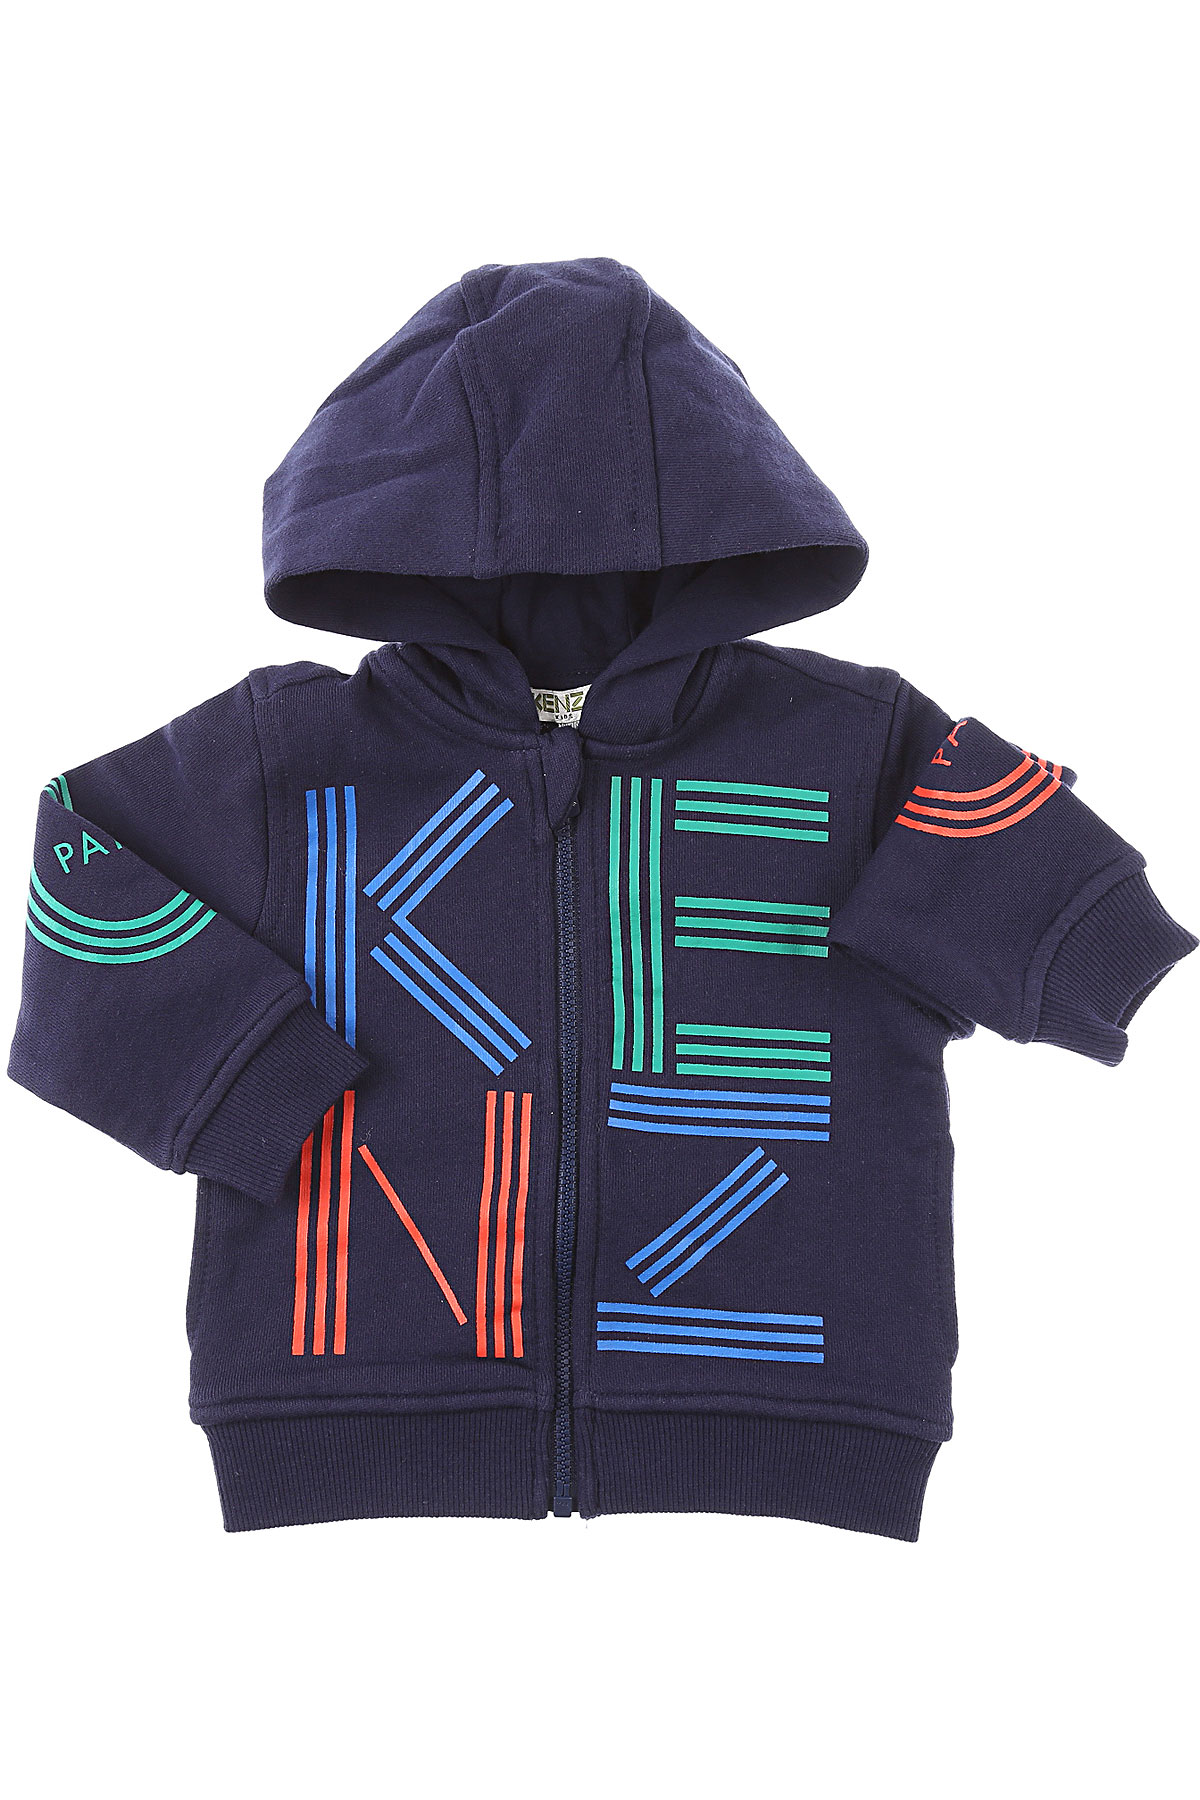 Kenzo Baby Sweatshirt & Kapuzenpullover für Jungen Günstig im Sale, Marine blau, Baumwolle, 2017, 12 M 18M 2Y 3Y 9M